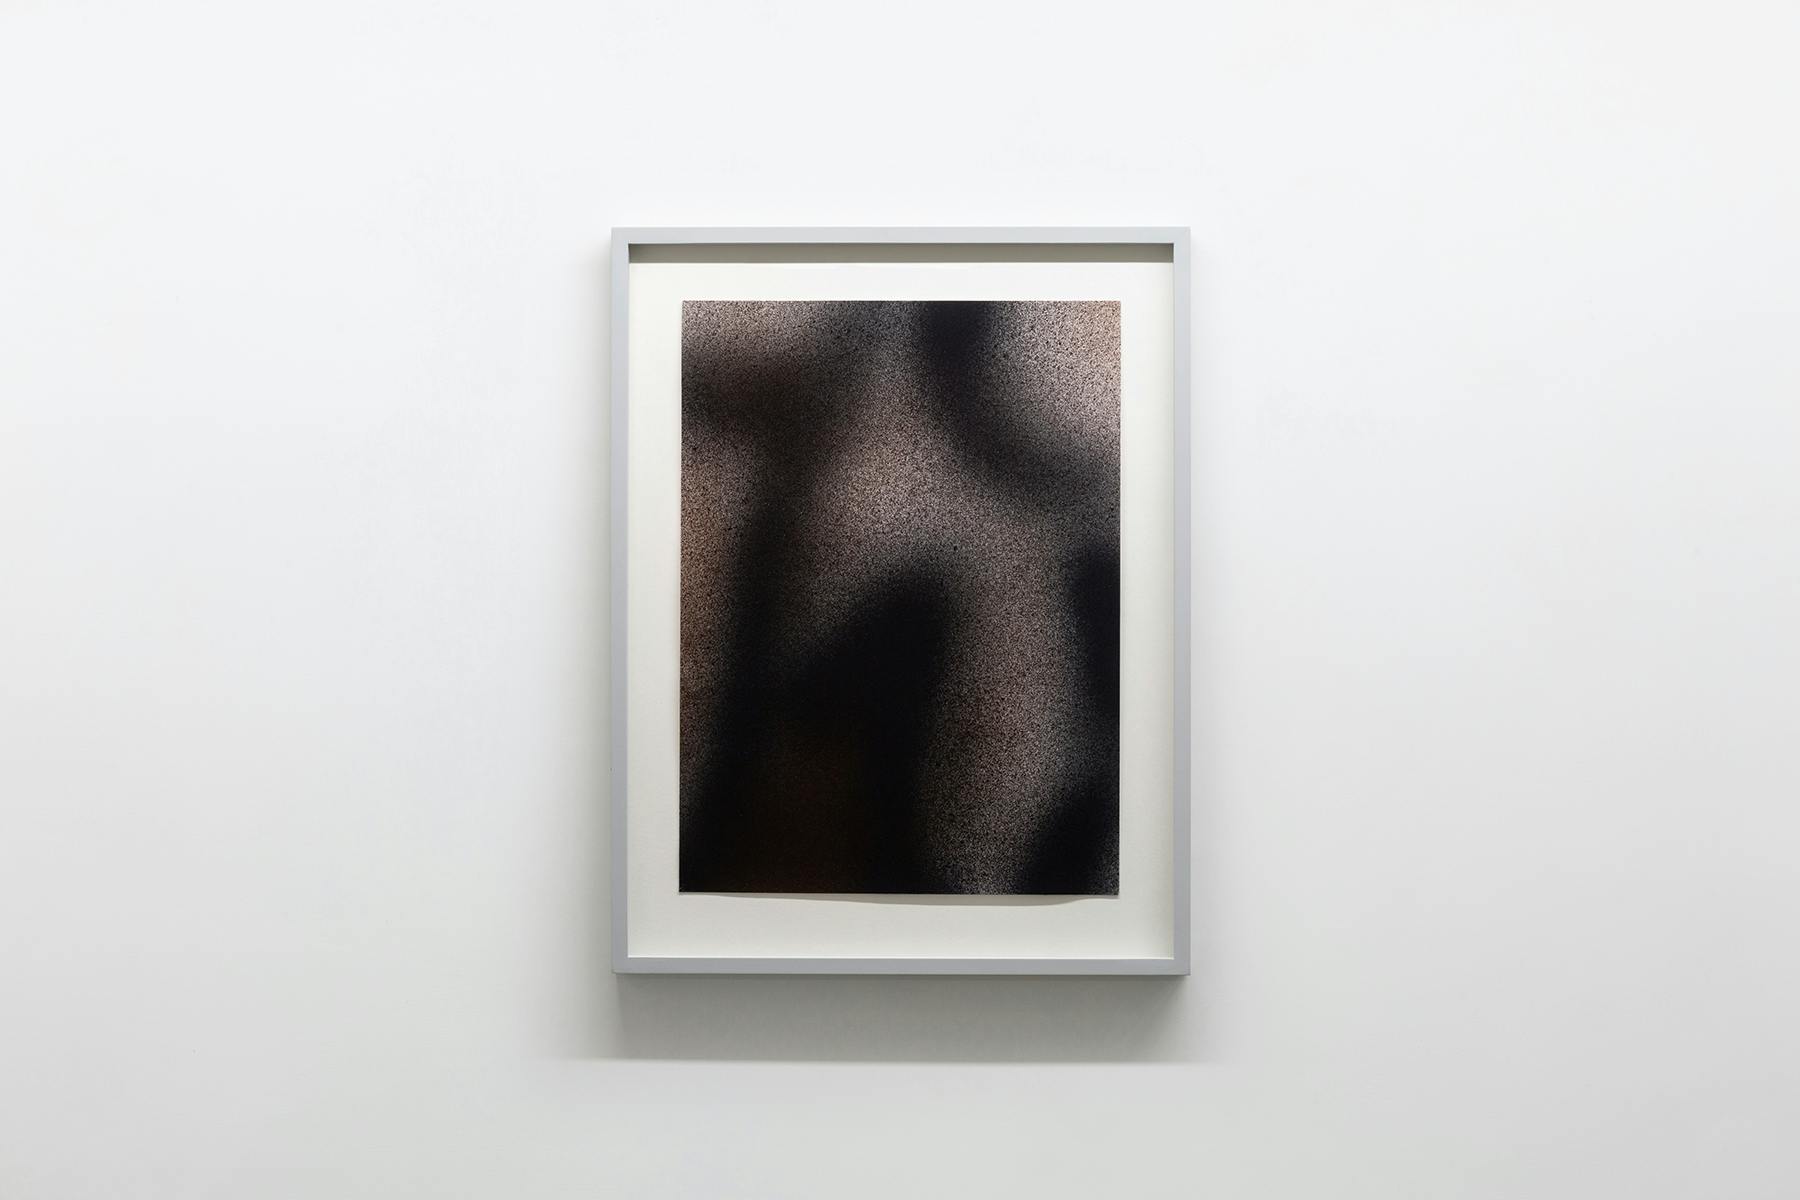 Senza titolo, 2009, acrilico su carta, 42,5 x 31,6 cm